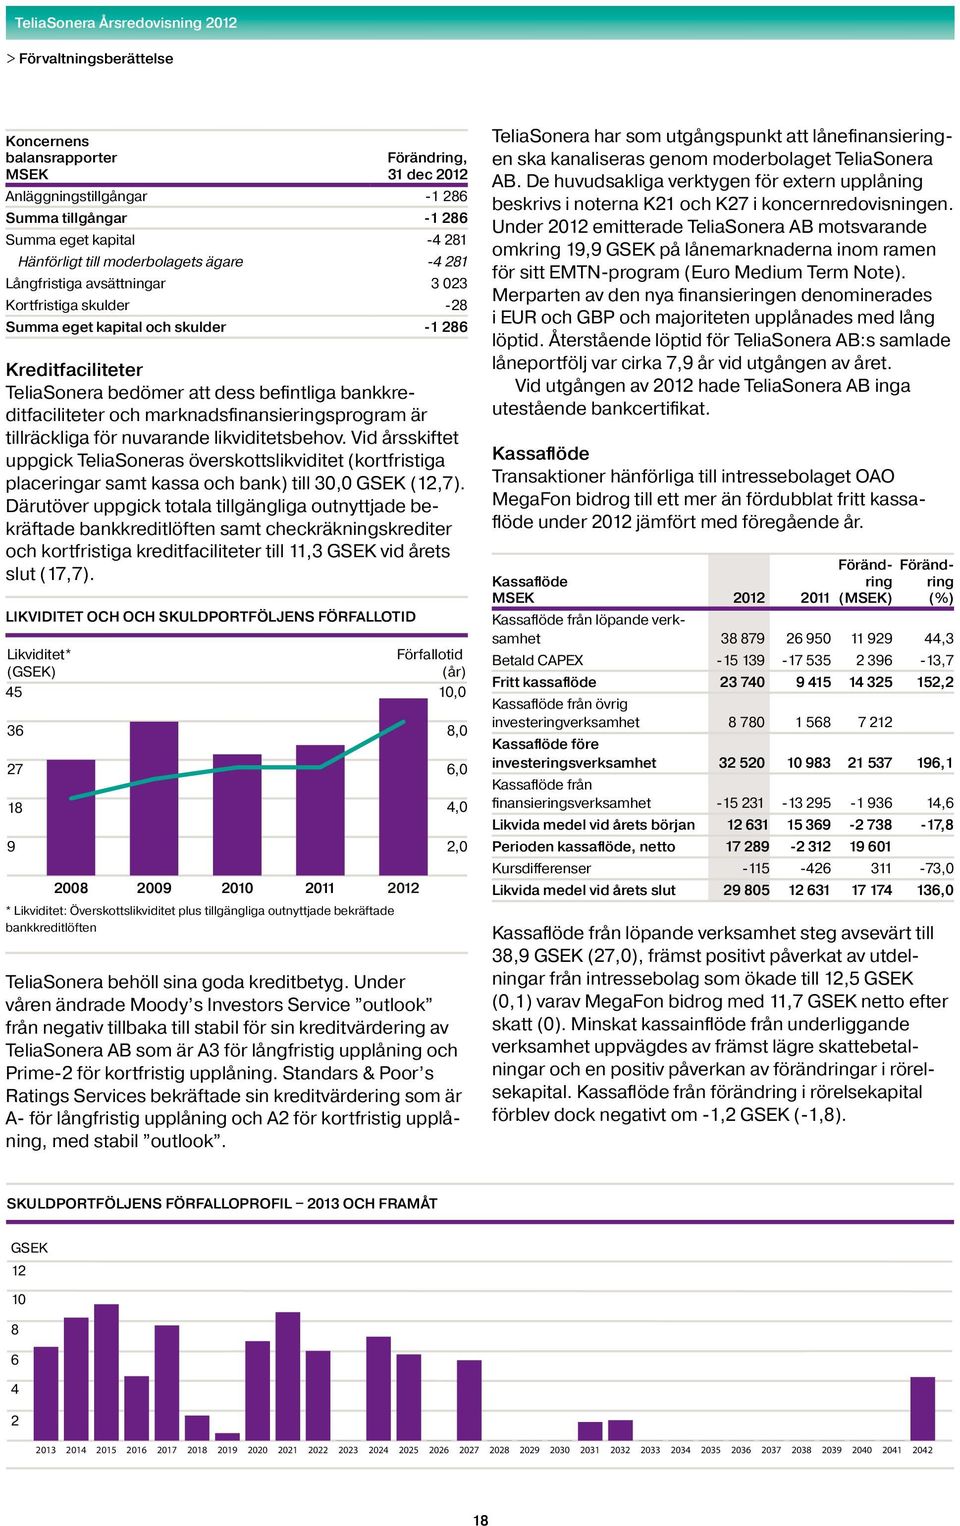 tillräckliga för nuvarande likviditetsbehov. Vid årsskiftet uppgick TeliaSoneras överskottslikviditet (kortfristiga placeringar samt kassa och bank) till 30,0 GSEK (12,7).